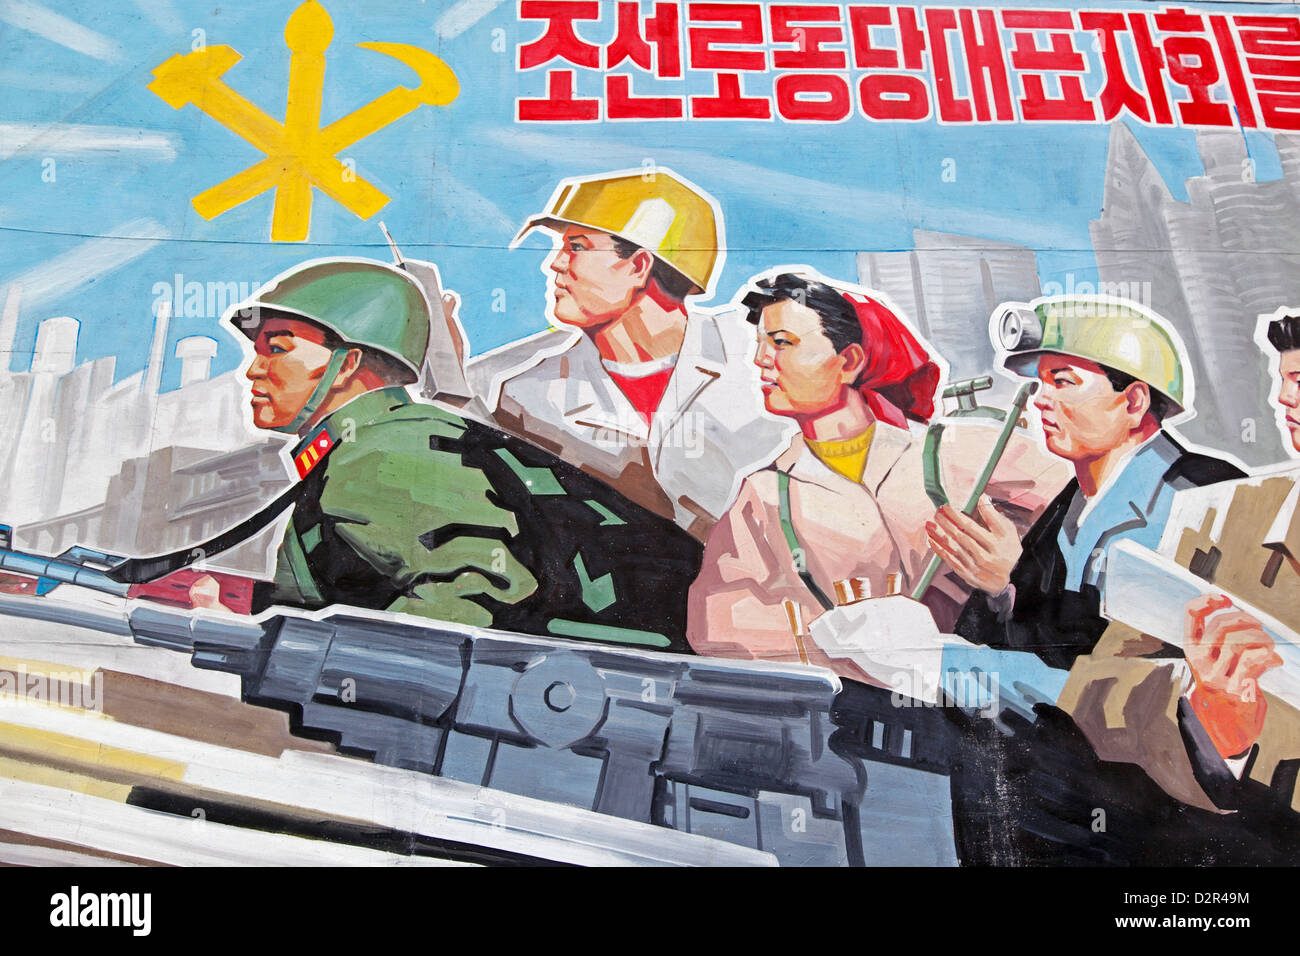 Wonsan, affiches de propagande de la ville, République populaire démocratique de Corée (RPDC), la Corée du Nord, d'Asie Banque D'Images